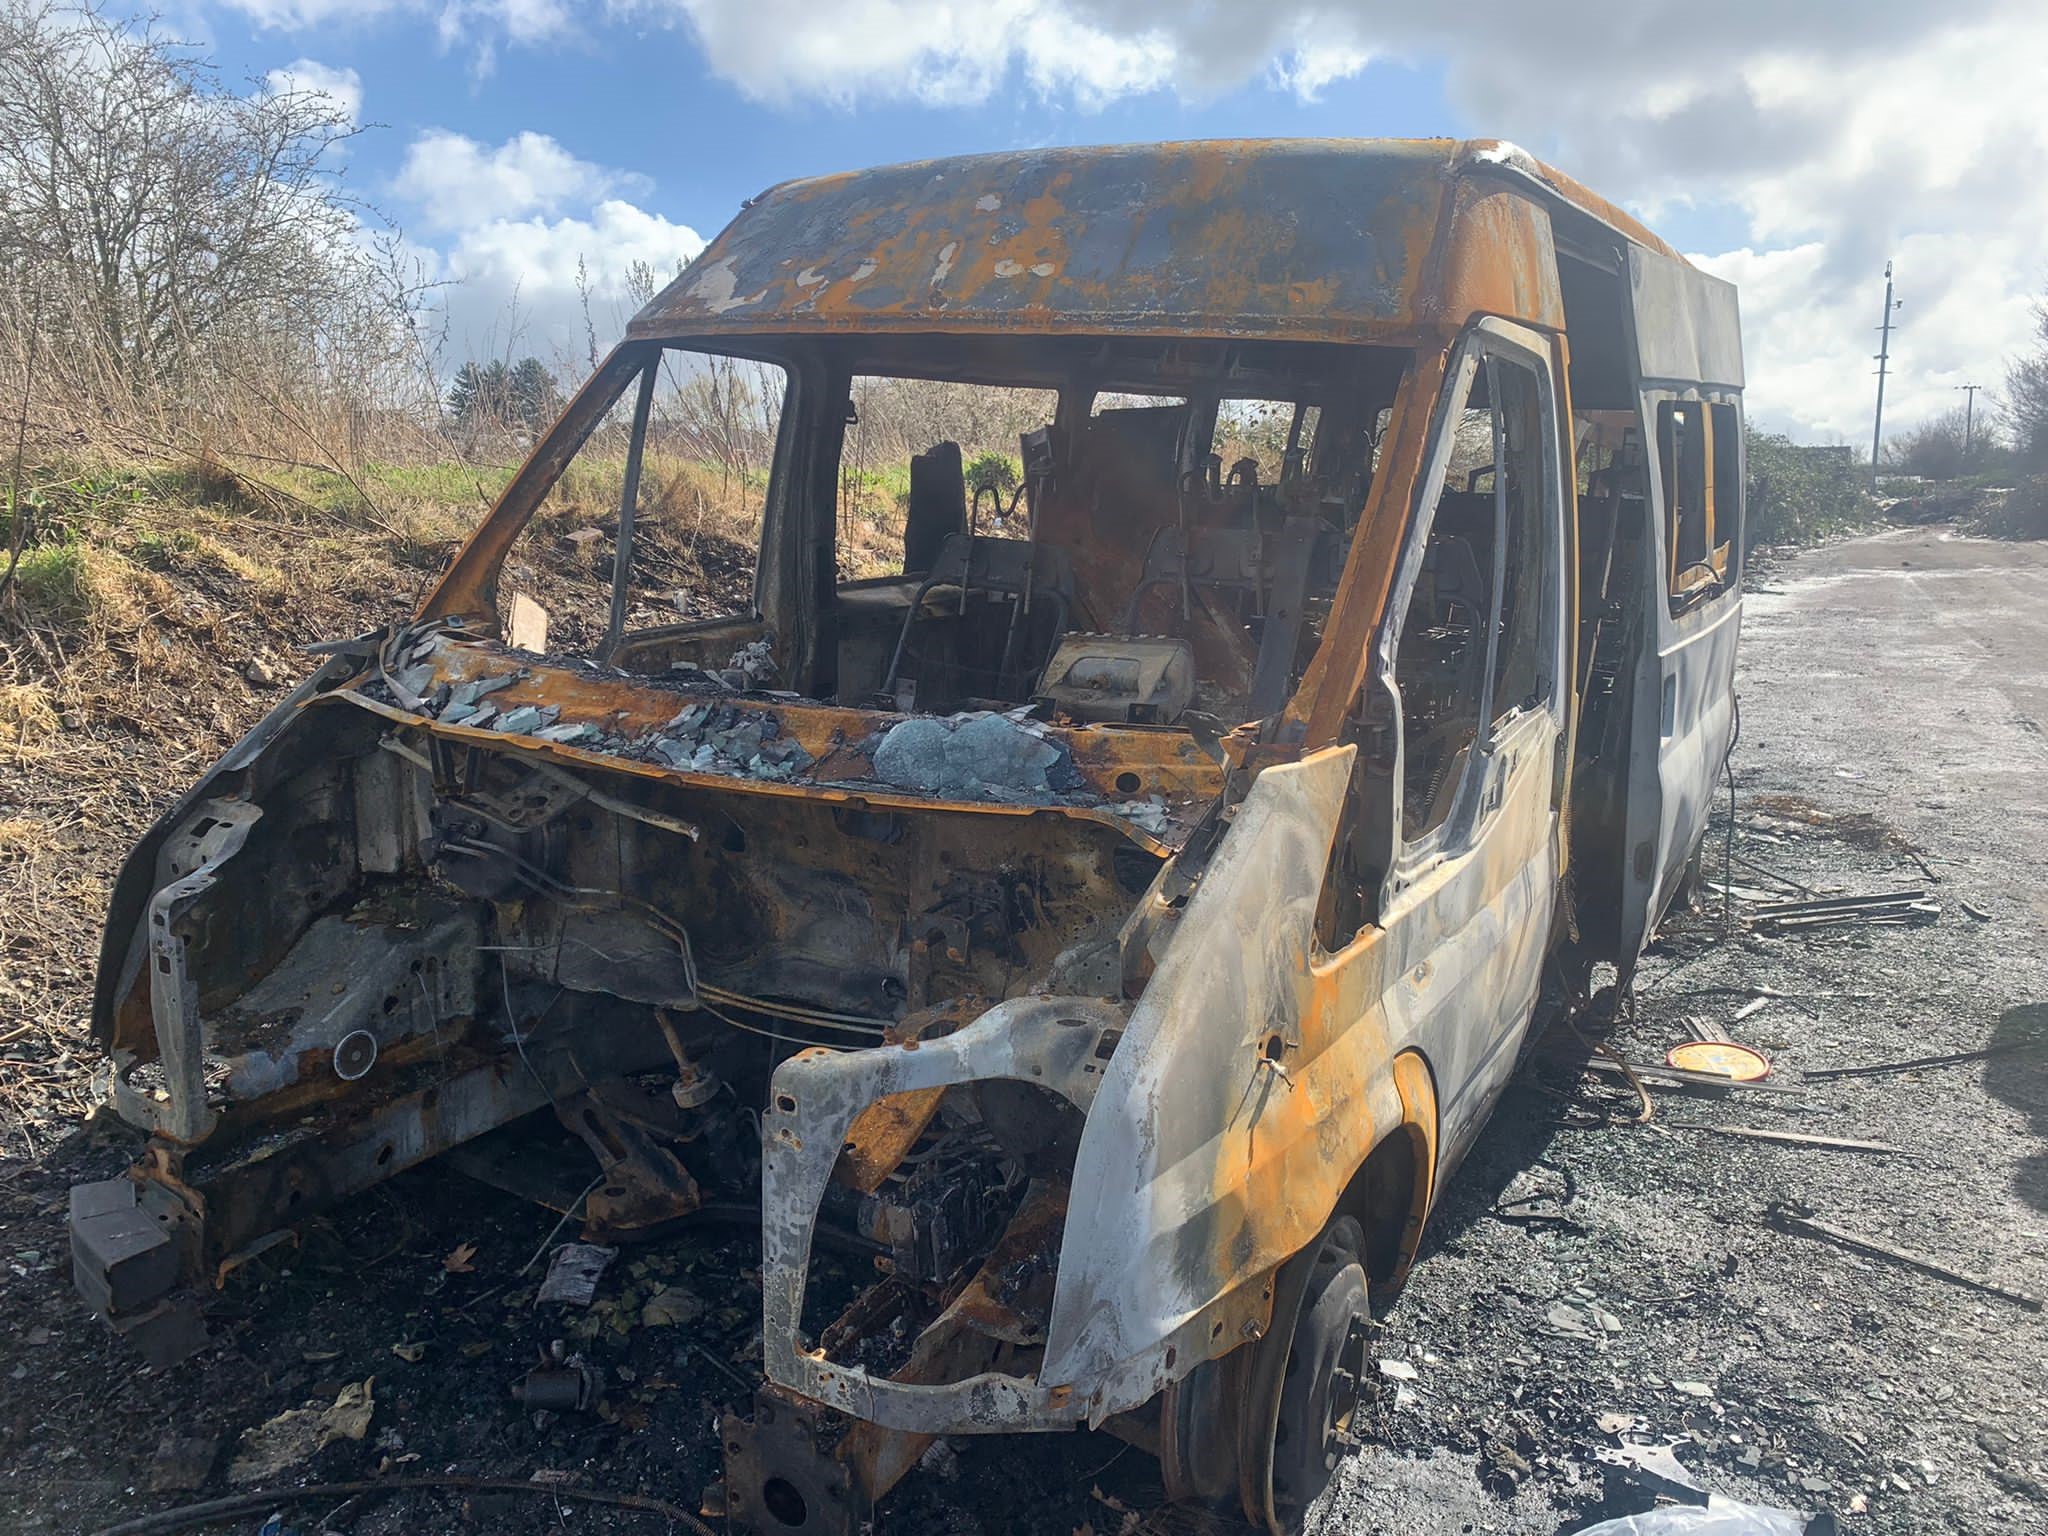 Burned minibus